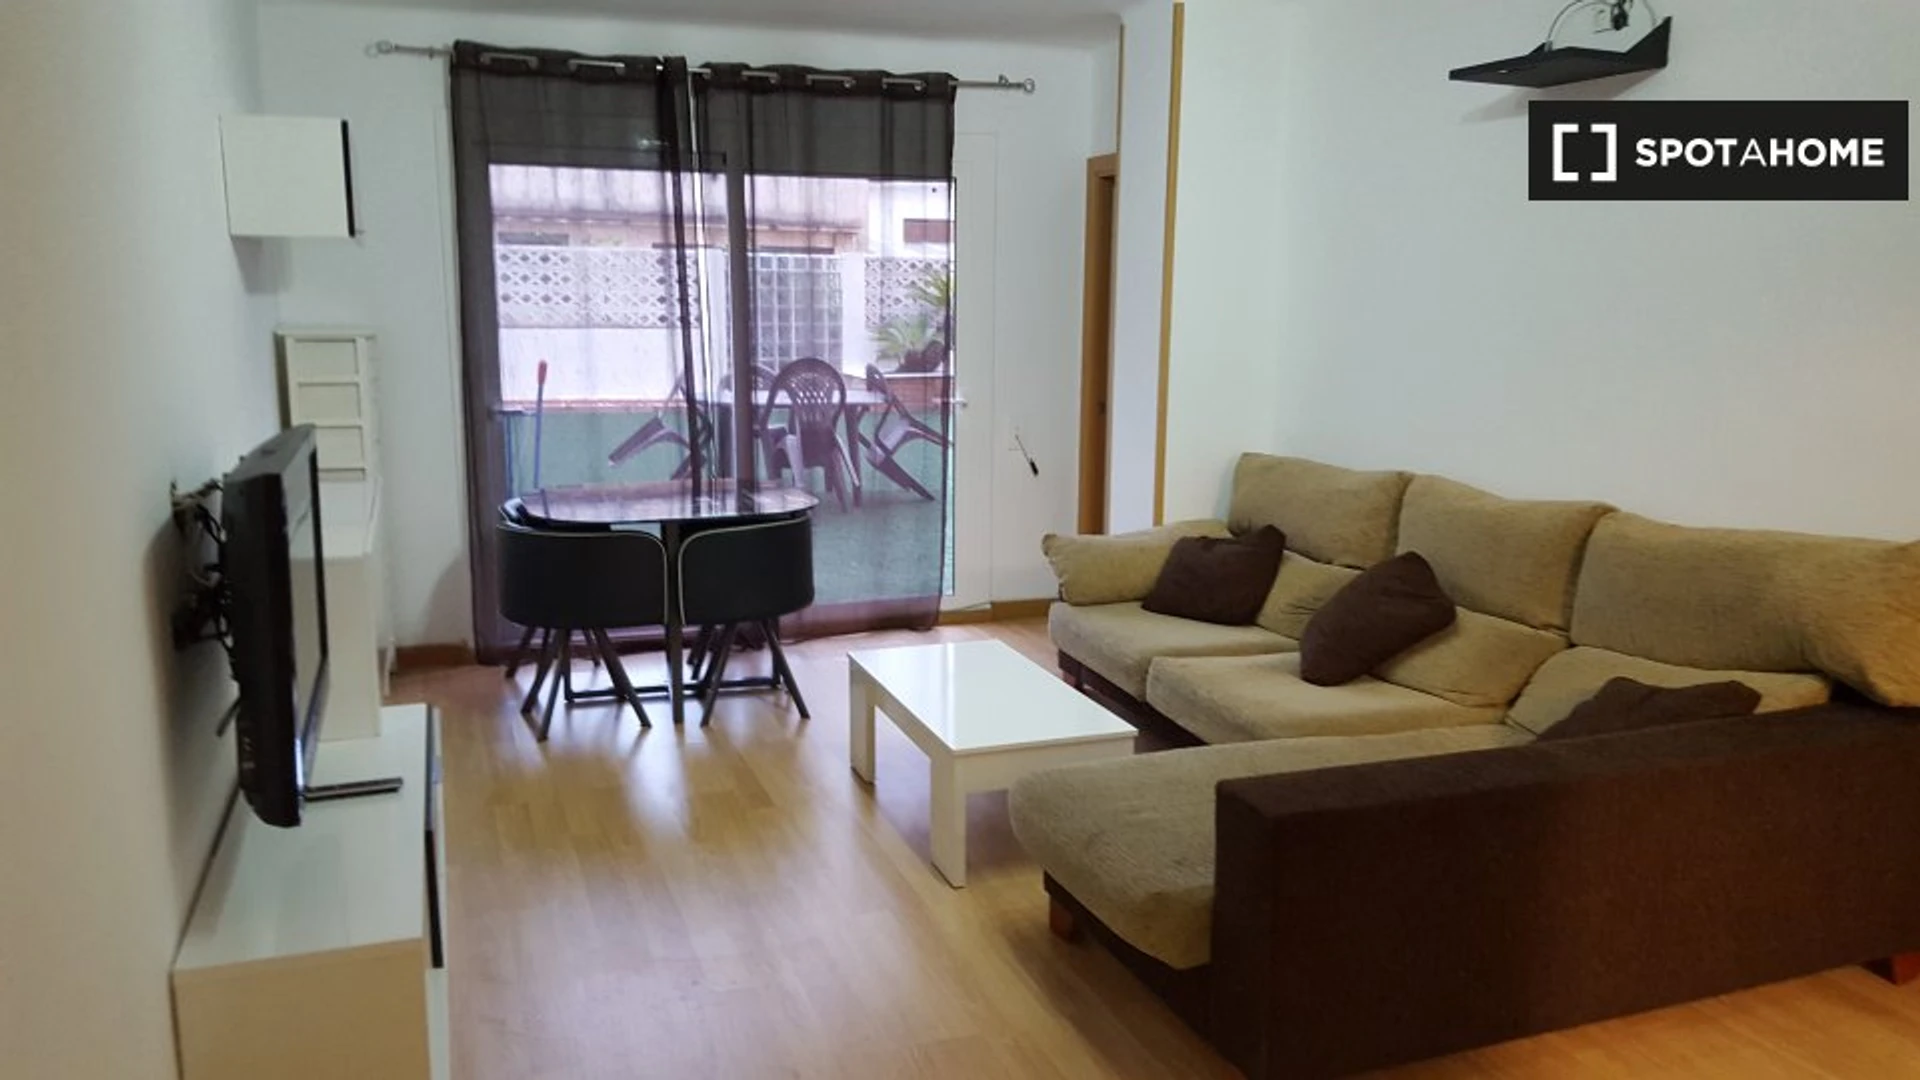 Alquiler de habitaciones por meses en Mataró